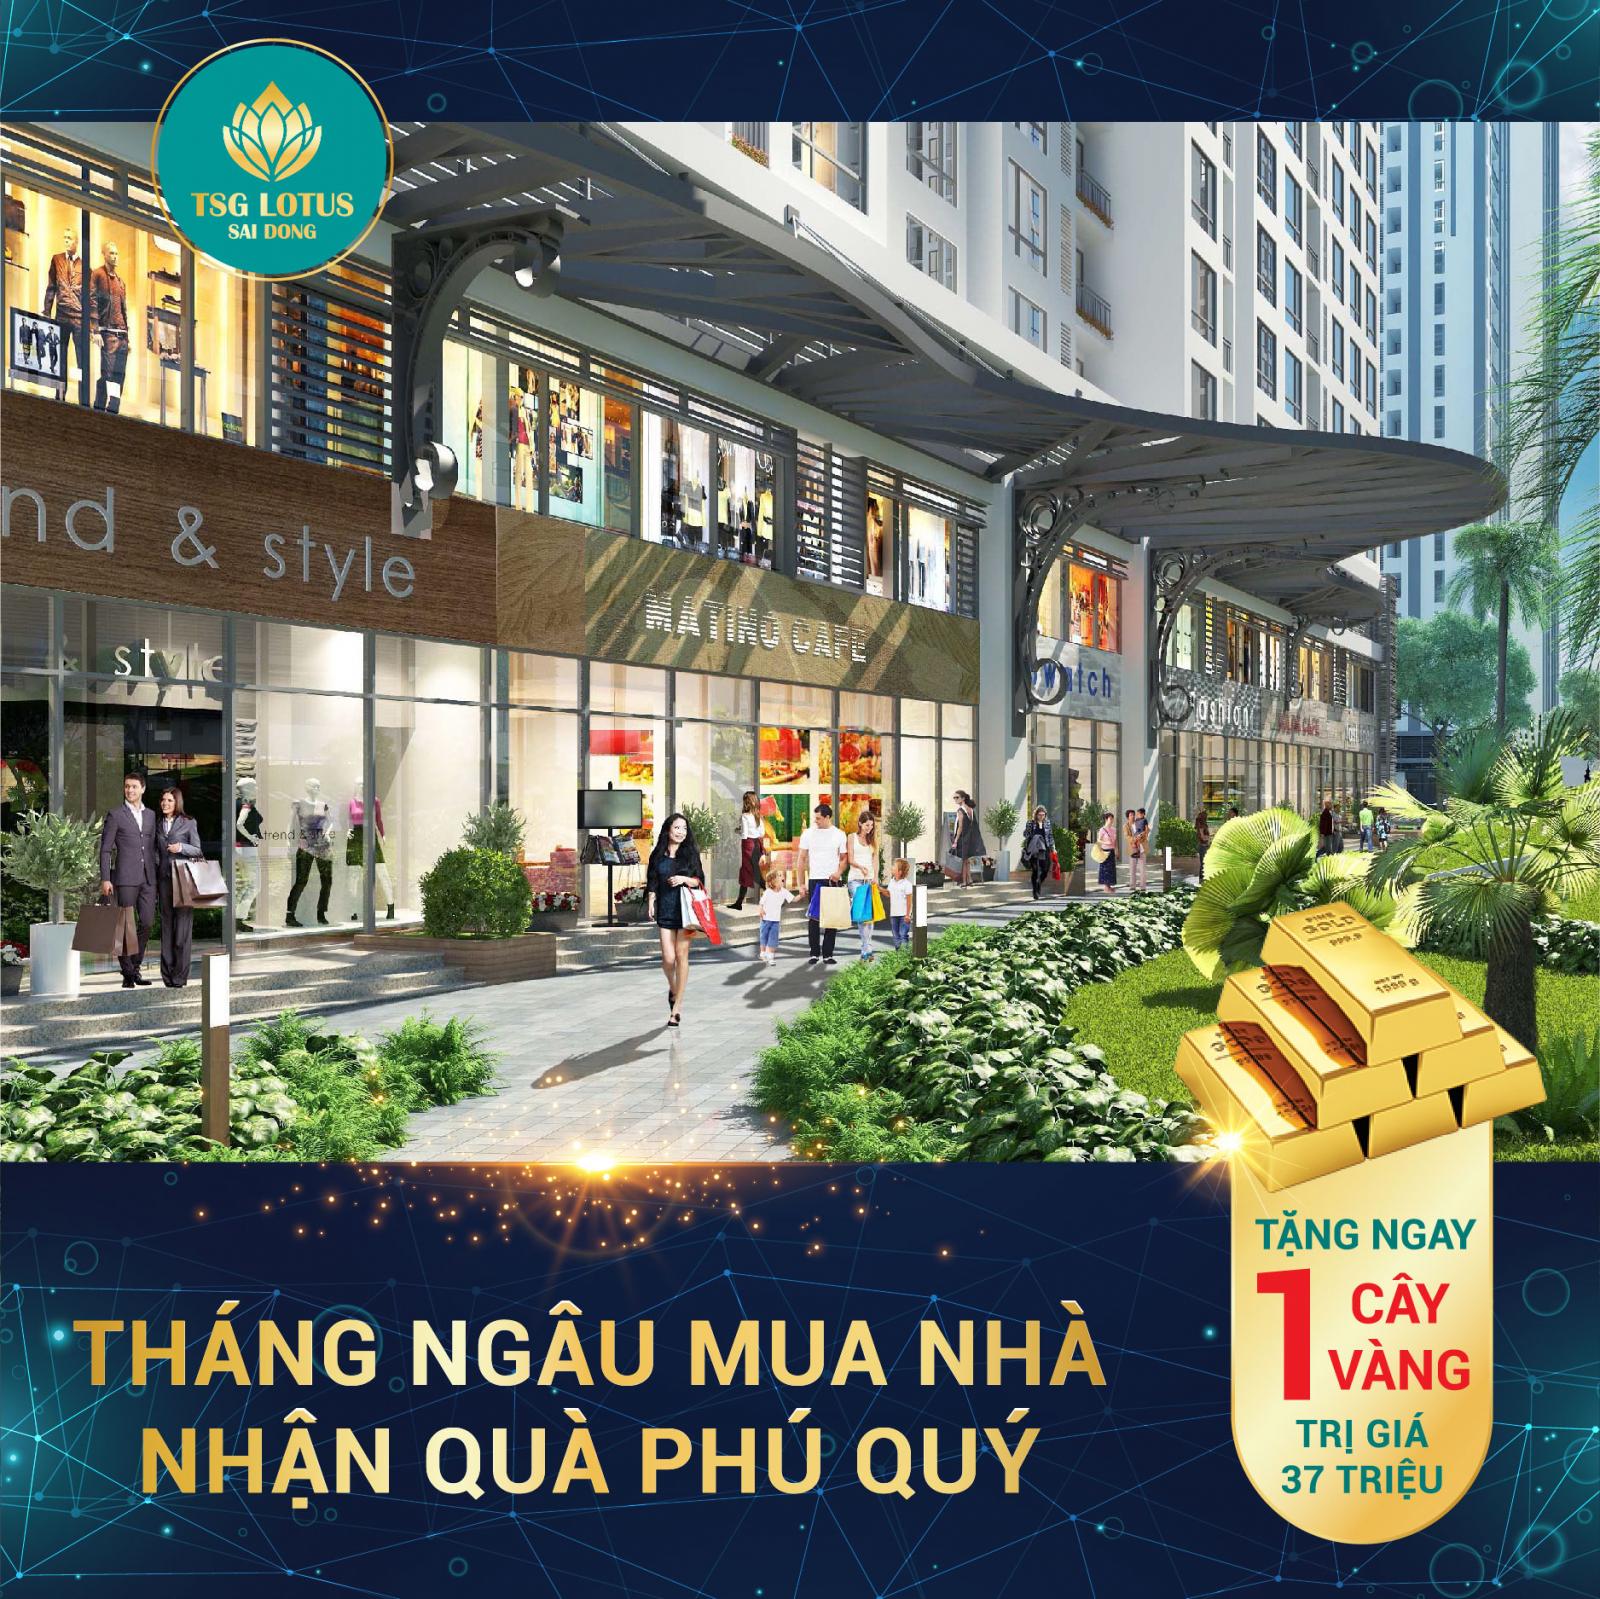 Chỉ từ 2,1 tỷ sở hữu căn 2PN + 1 dự án TSG Lotus Sài Đồng, căn hộ smarthome đầu tiên tại Long Biên 10443224